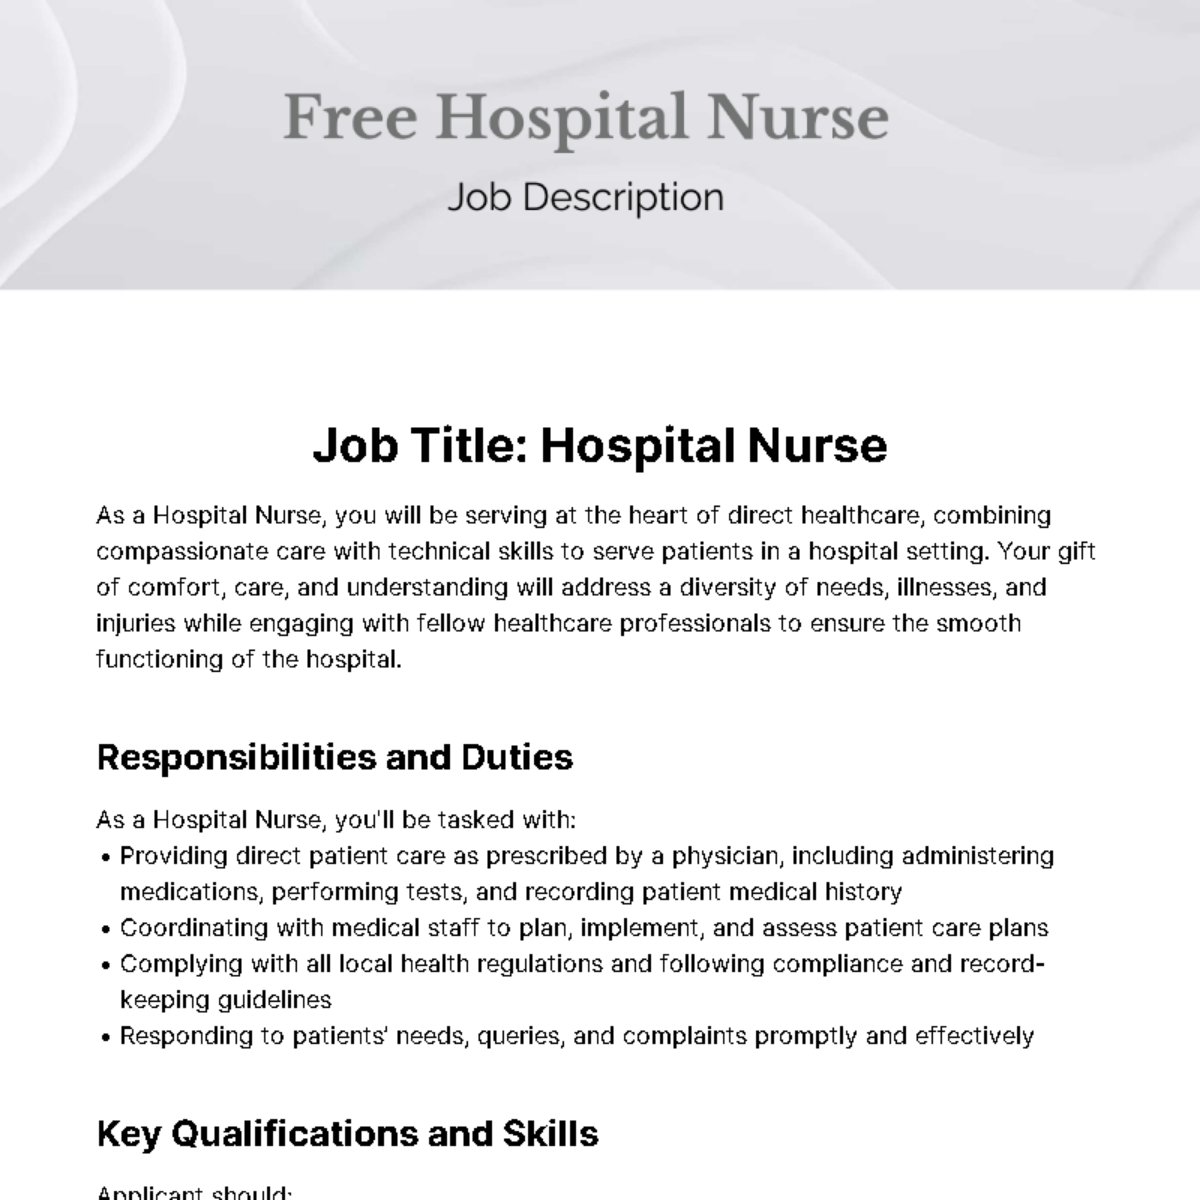 Free Hospital Nurse Job Description Template